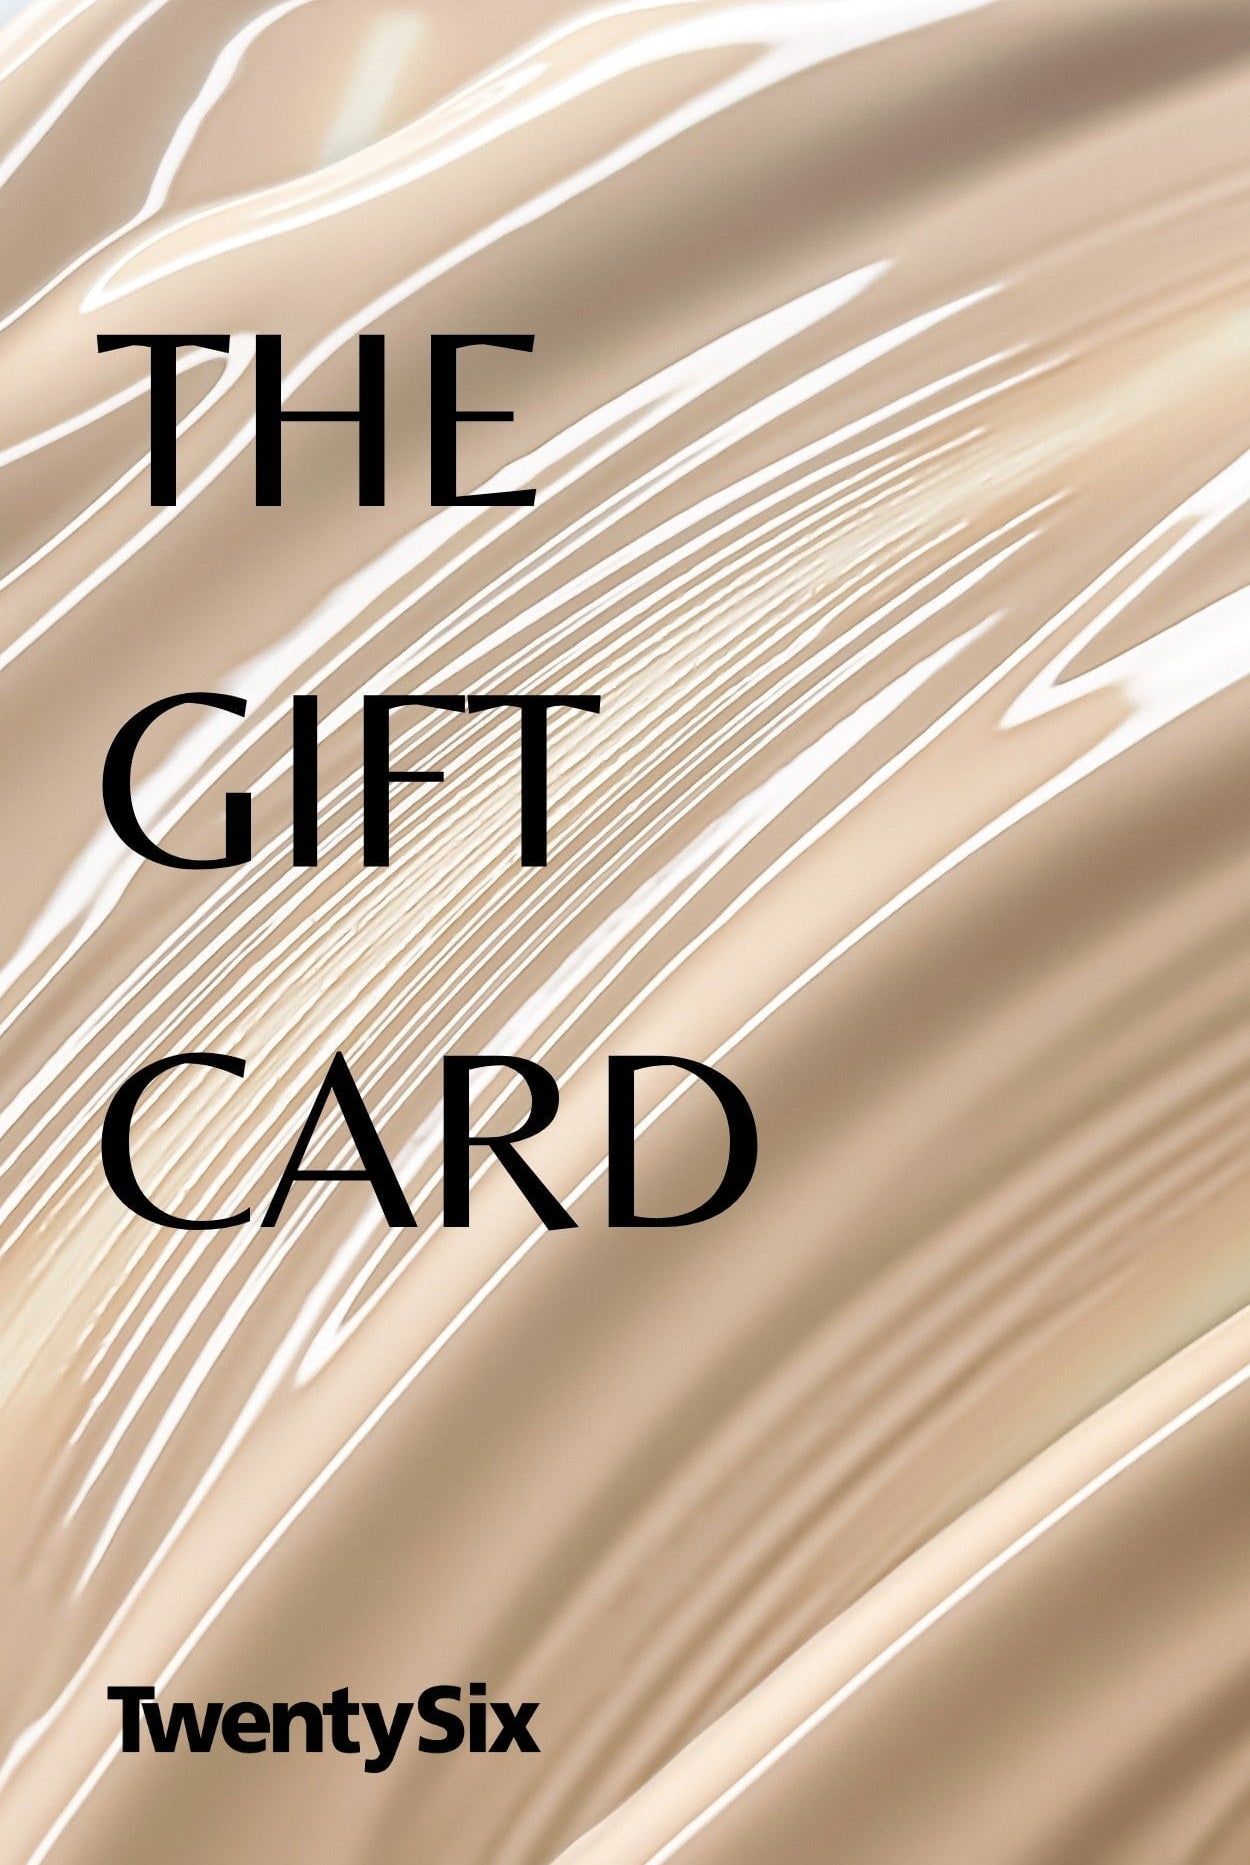 גיפט קארד Gift Cards TwentySix 